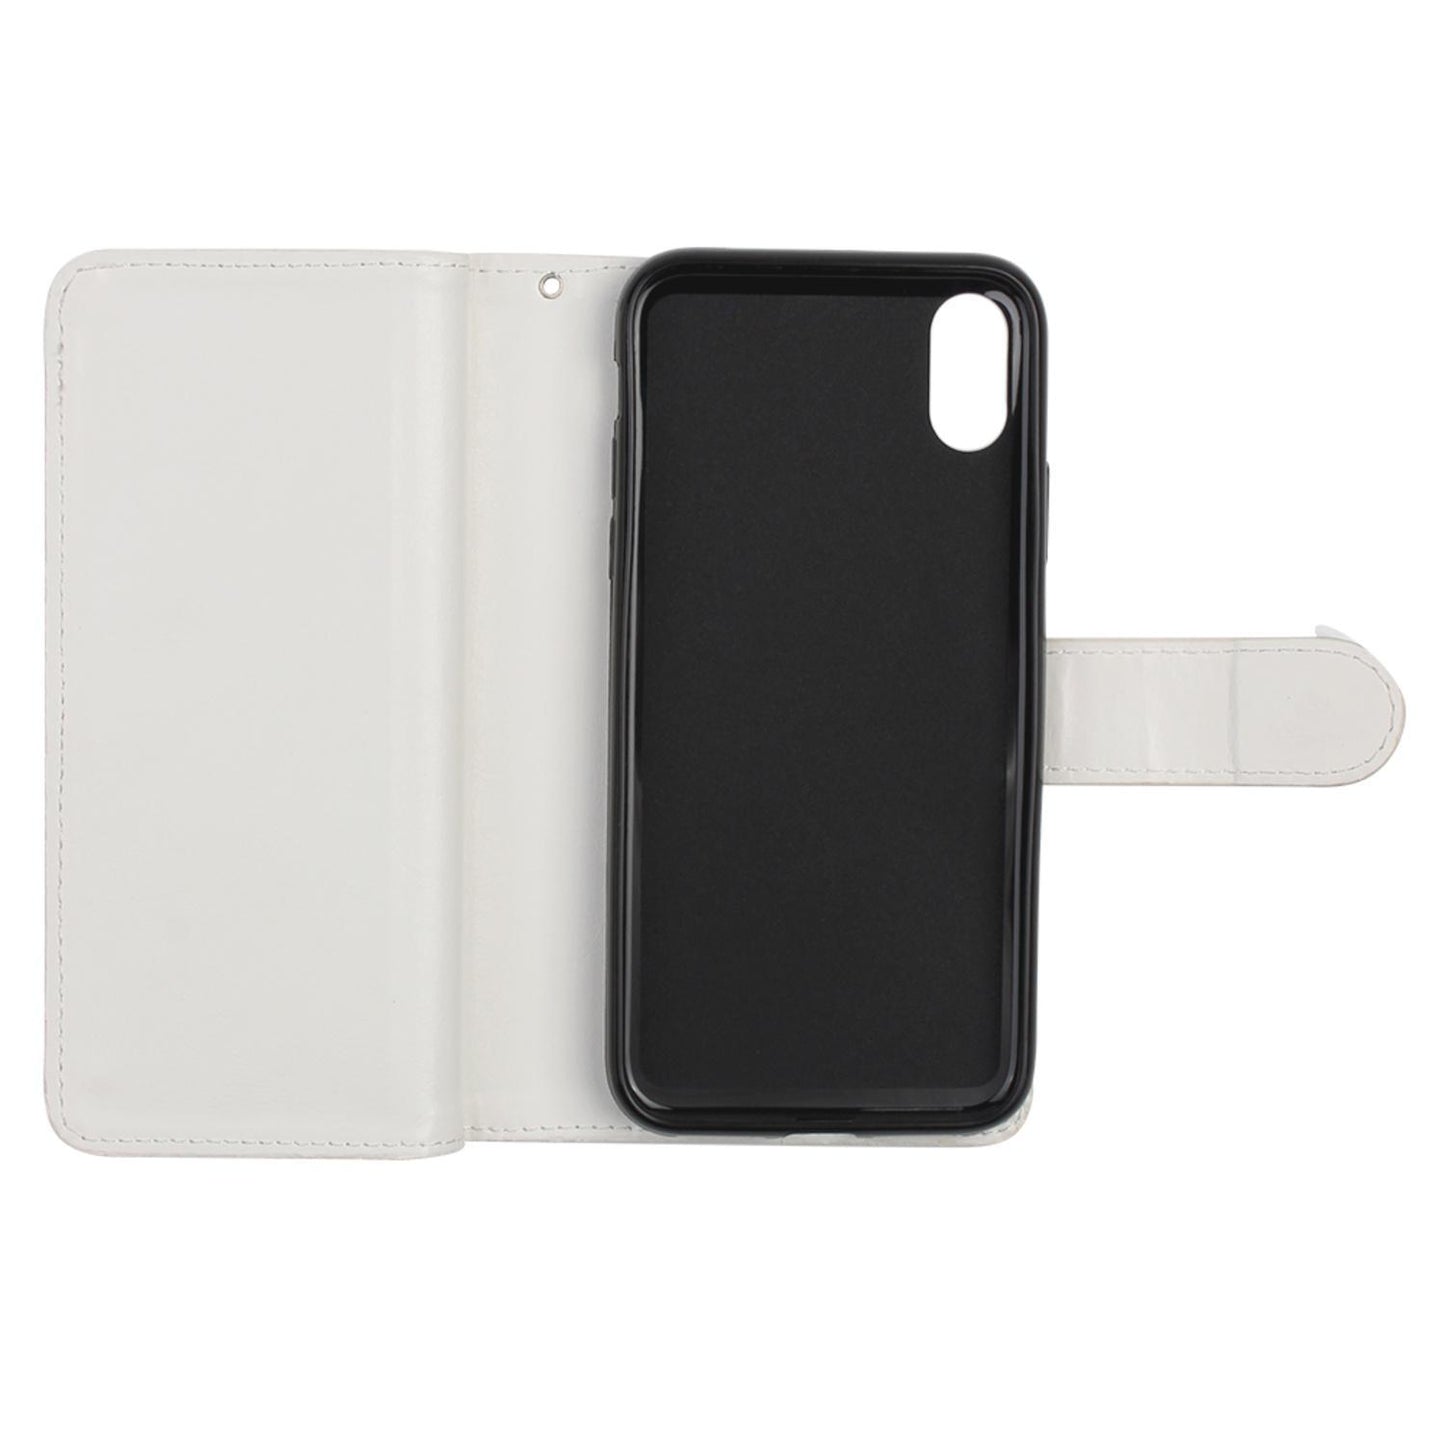 Plånboksfodral iPhone X /Xs,  9 kortplatser / ID